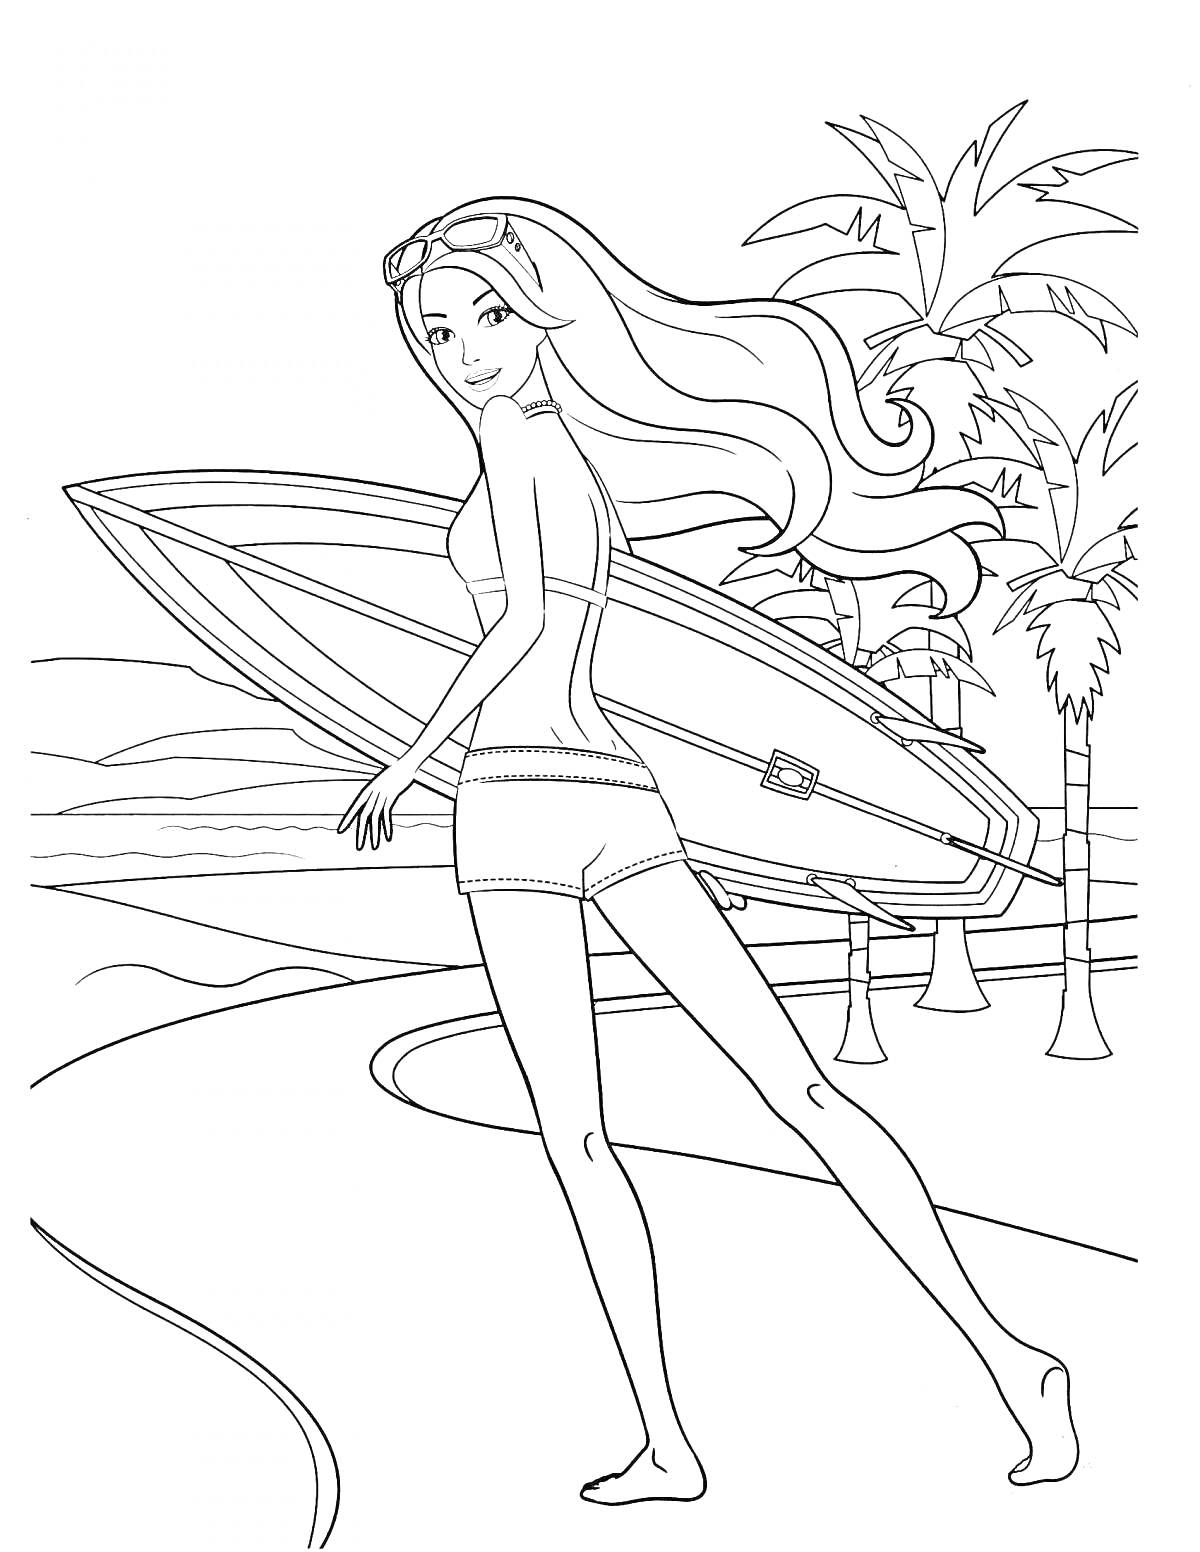 Девочка с длинными волосами несет доску для серфинга на пляже с пальмами